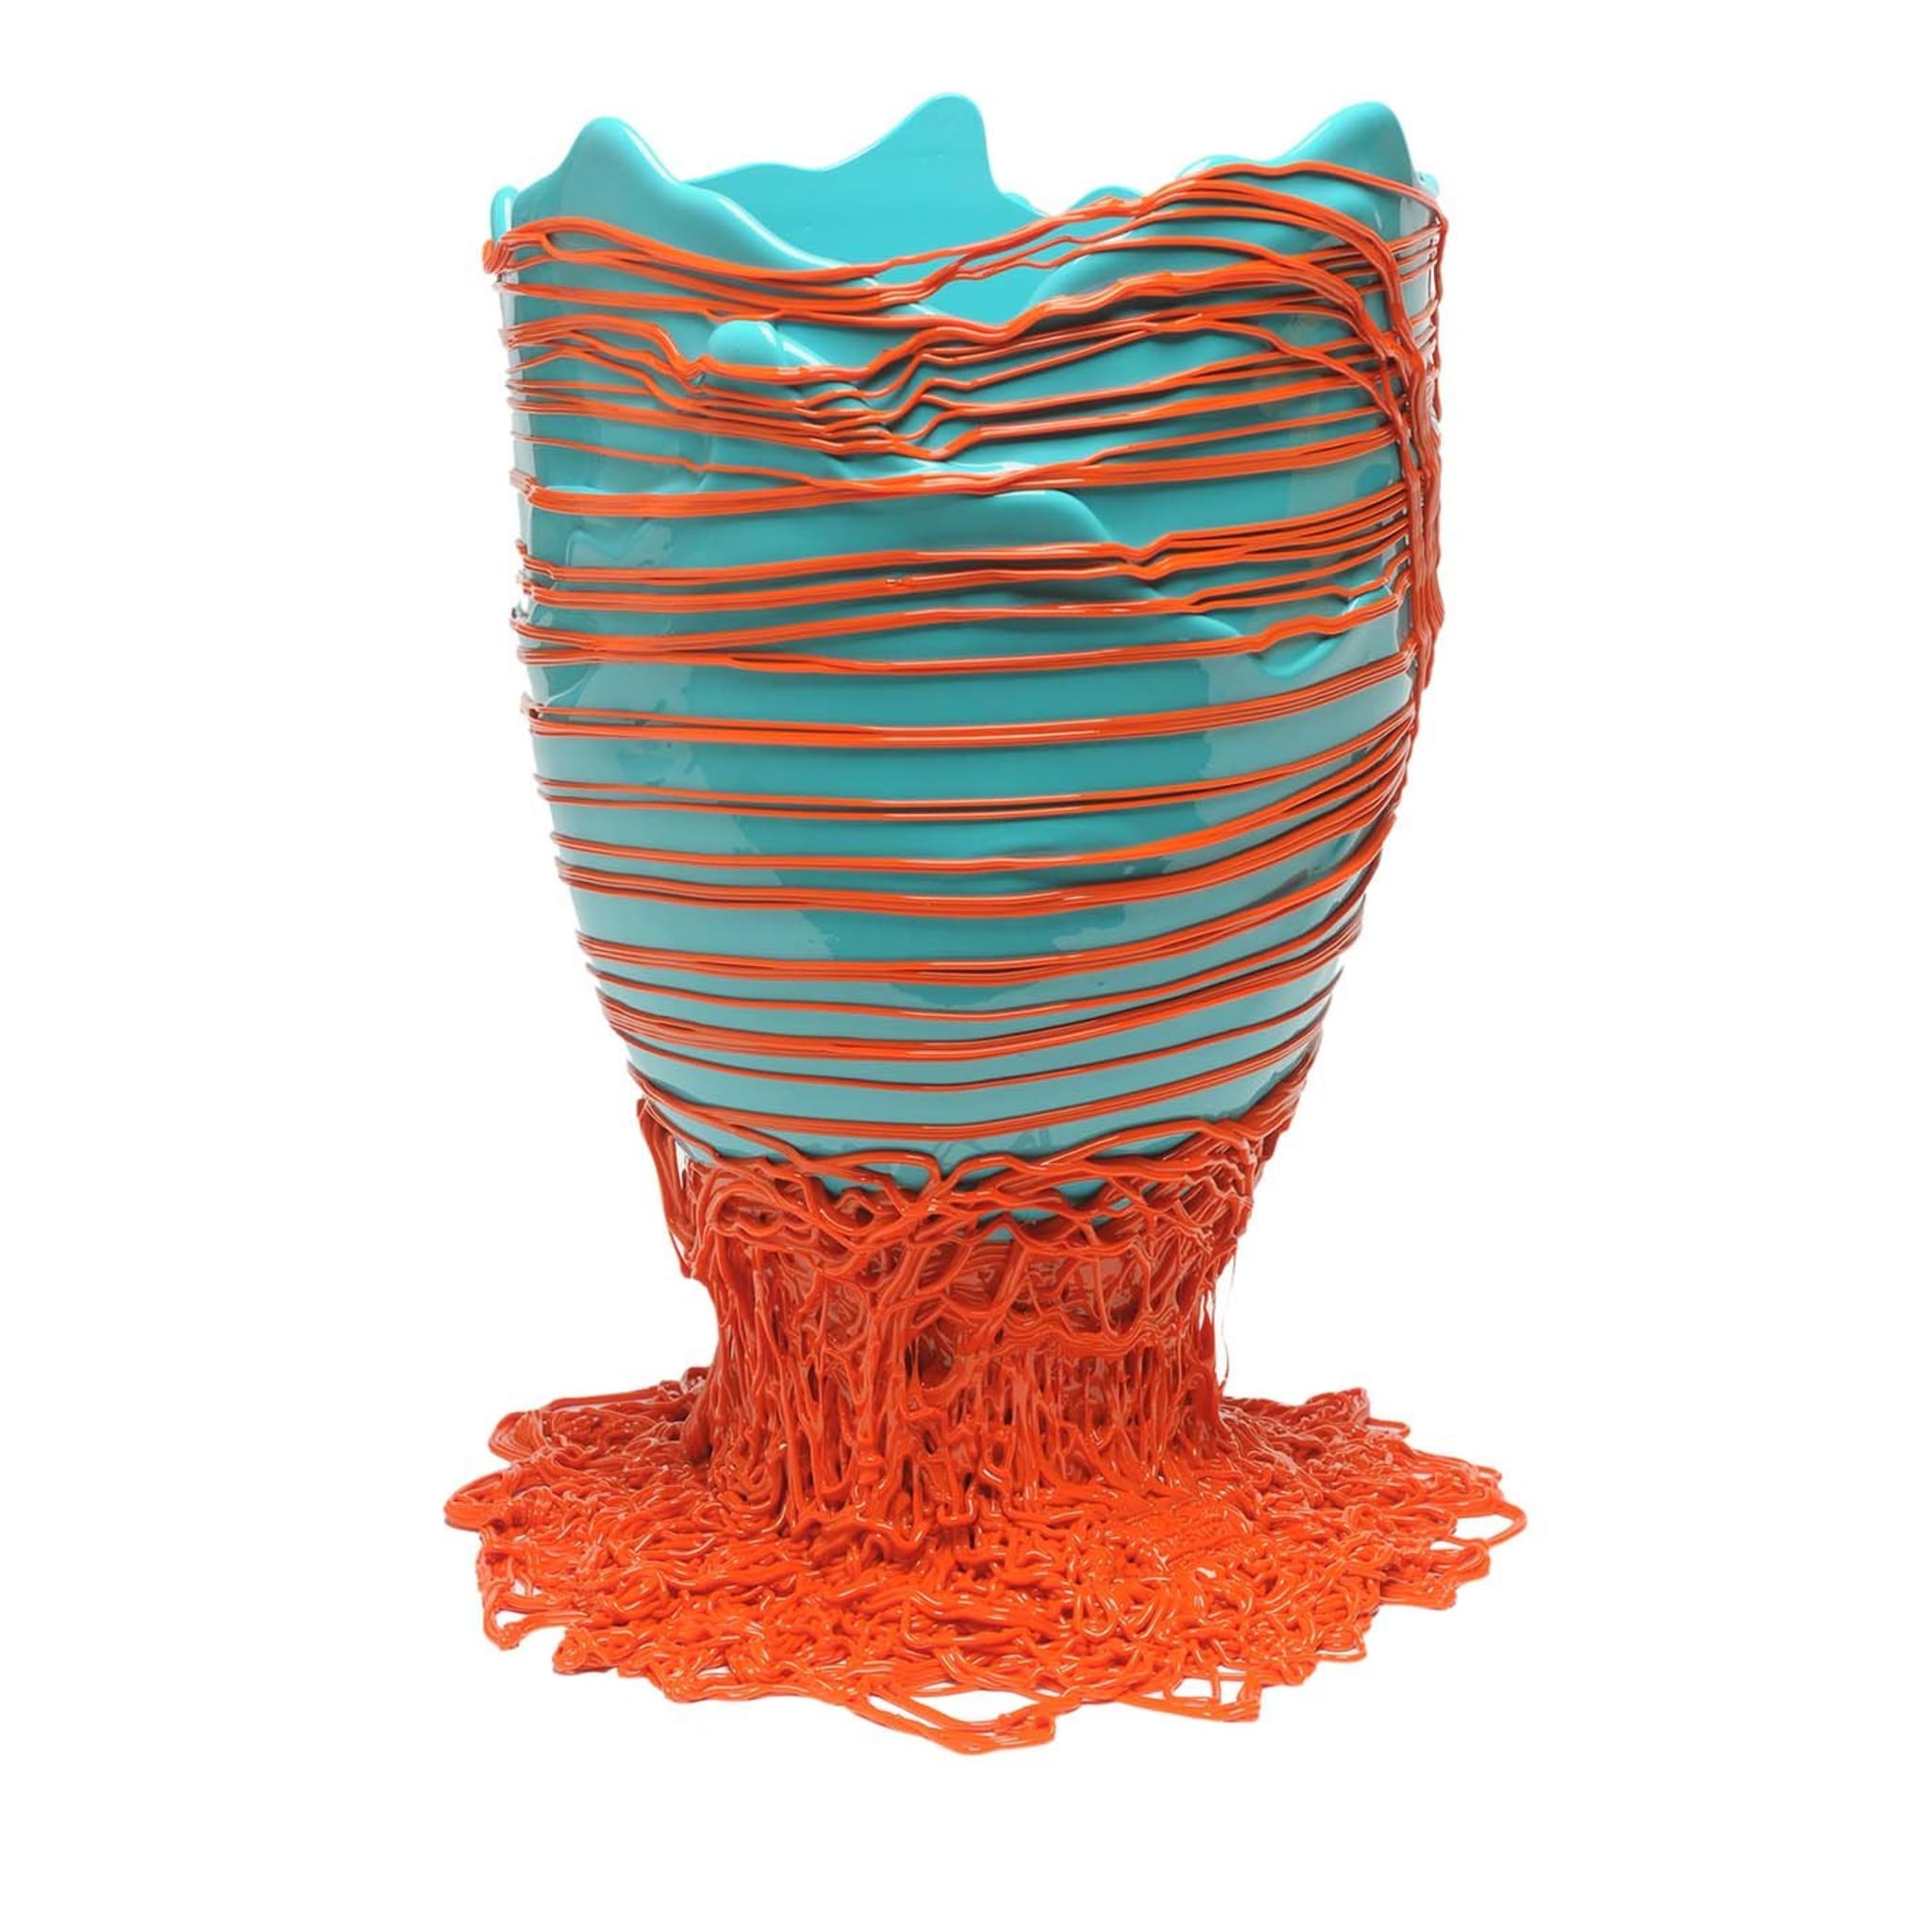 Große Vase in Spaghetti-Orange und Hellblau von Gaetano Pesce - Hauptansicht